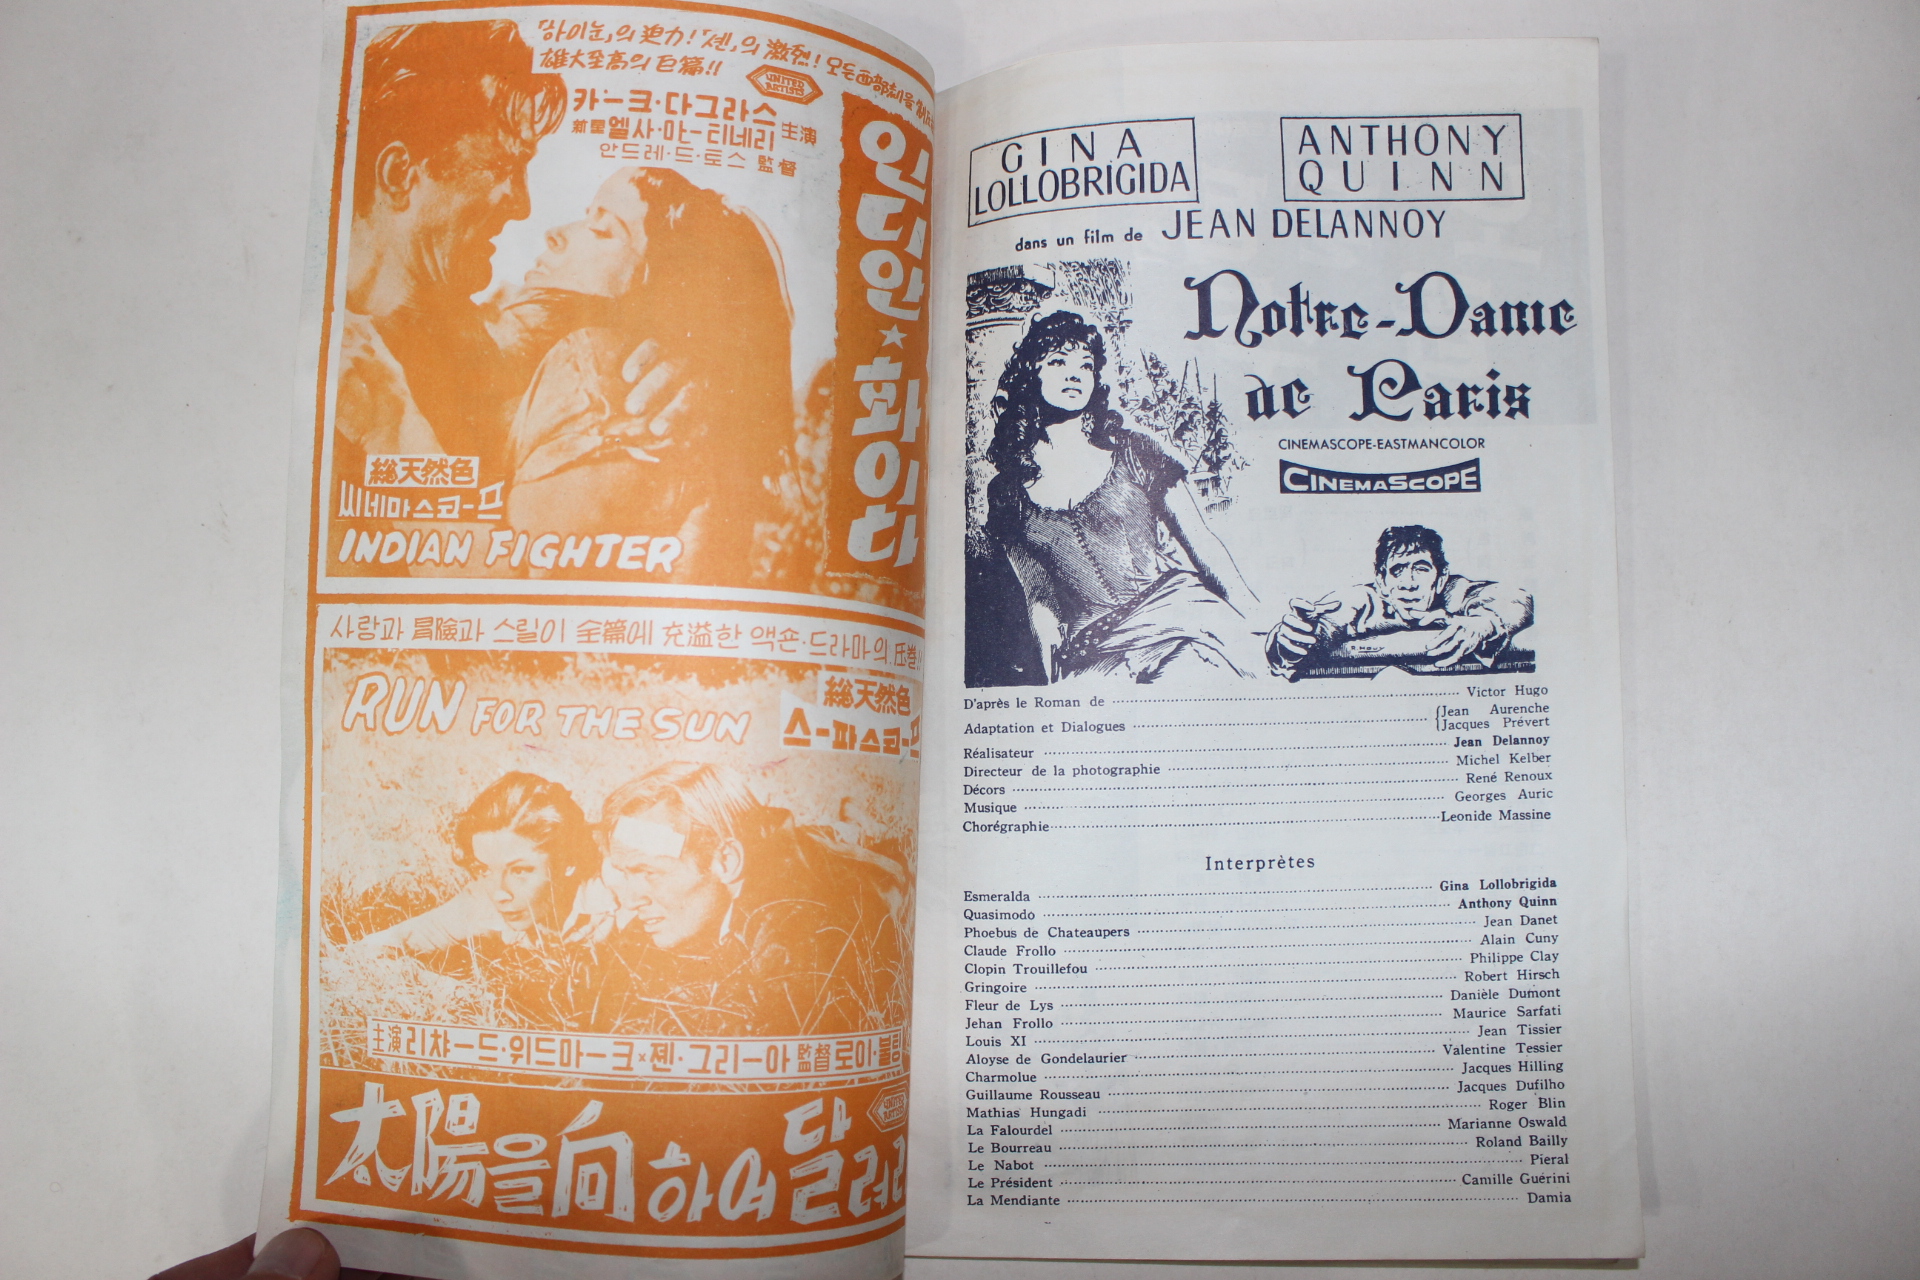 1956년 프랑스영화 팜플렛,리플렛,포스터 장 드라느와 노틀담의 꼽추